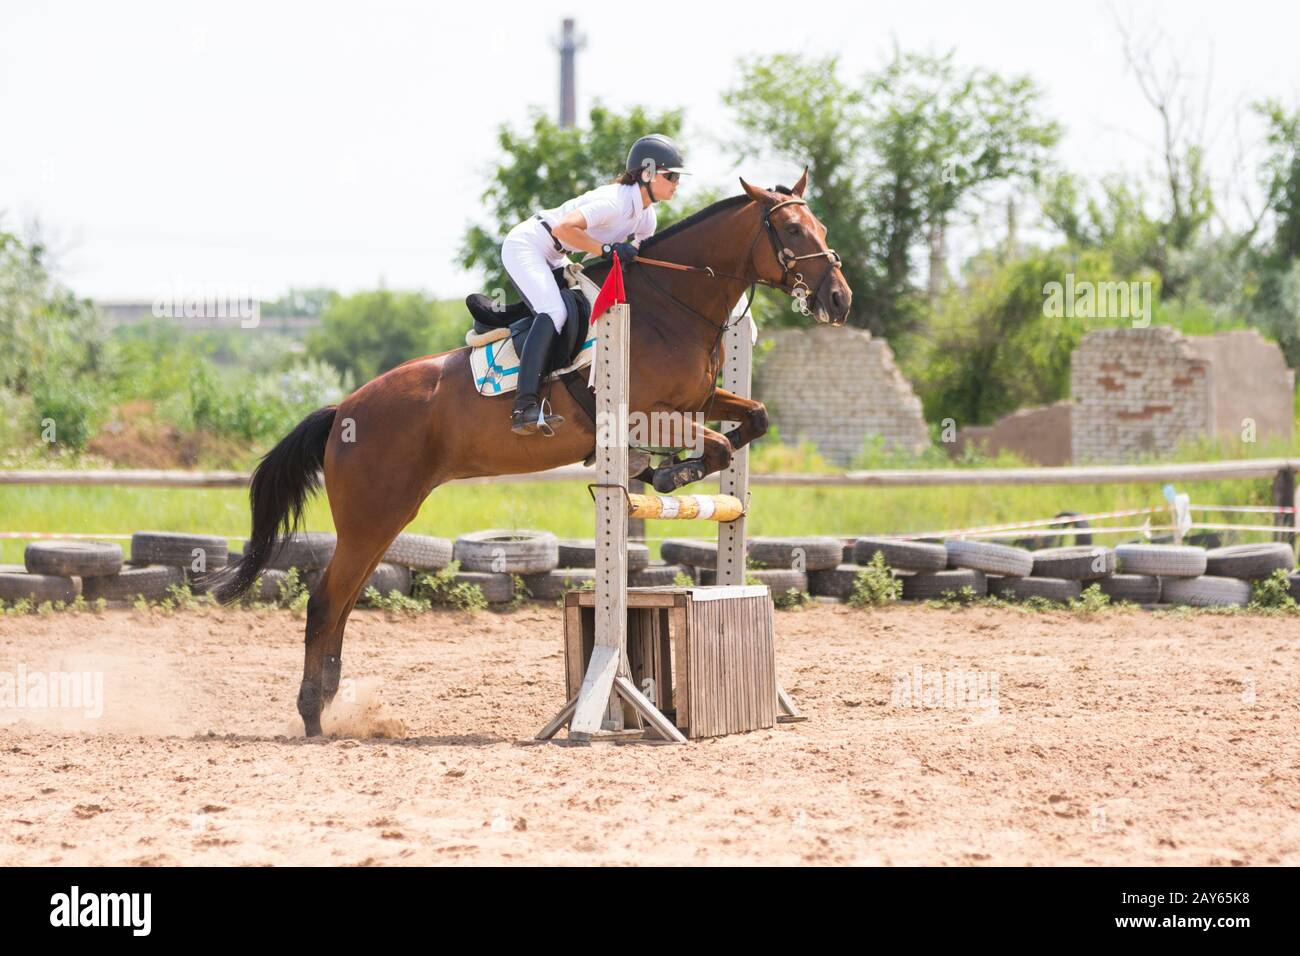 Volgograd, Russland - 19. Juni 2016: Sportler auf Pferd einen Sprung über eine Hürde springen Wettbewerb, der Moment der Trennung Stockfoto